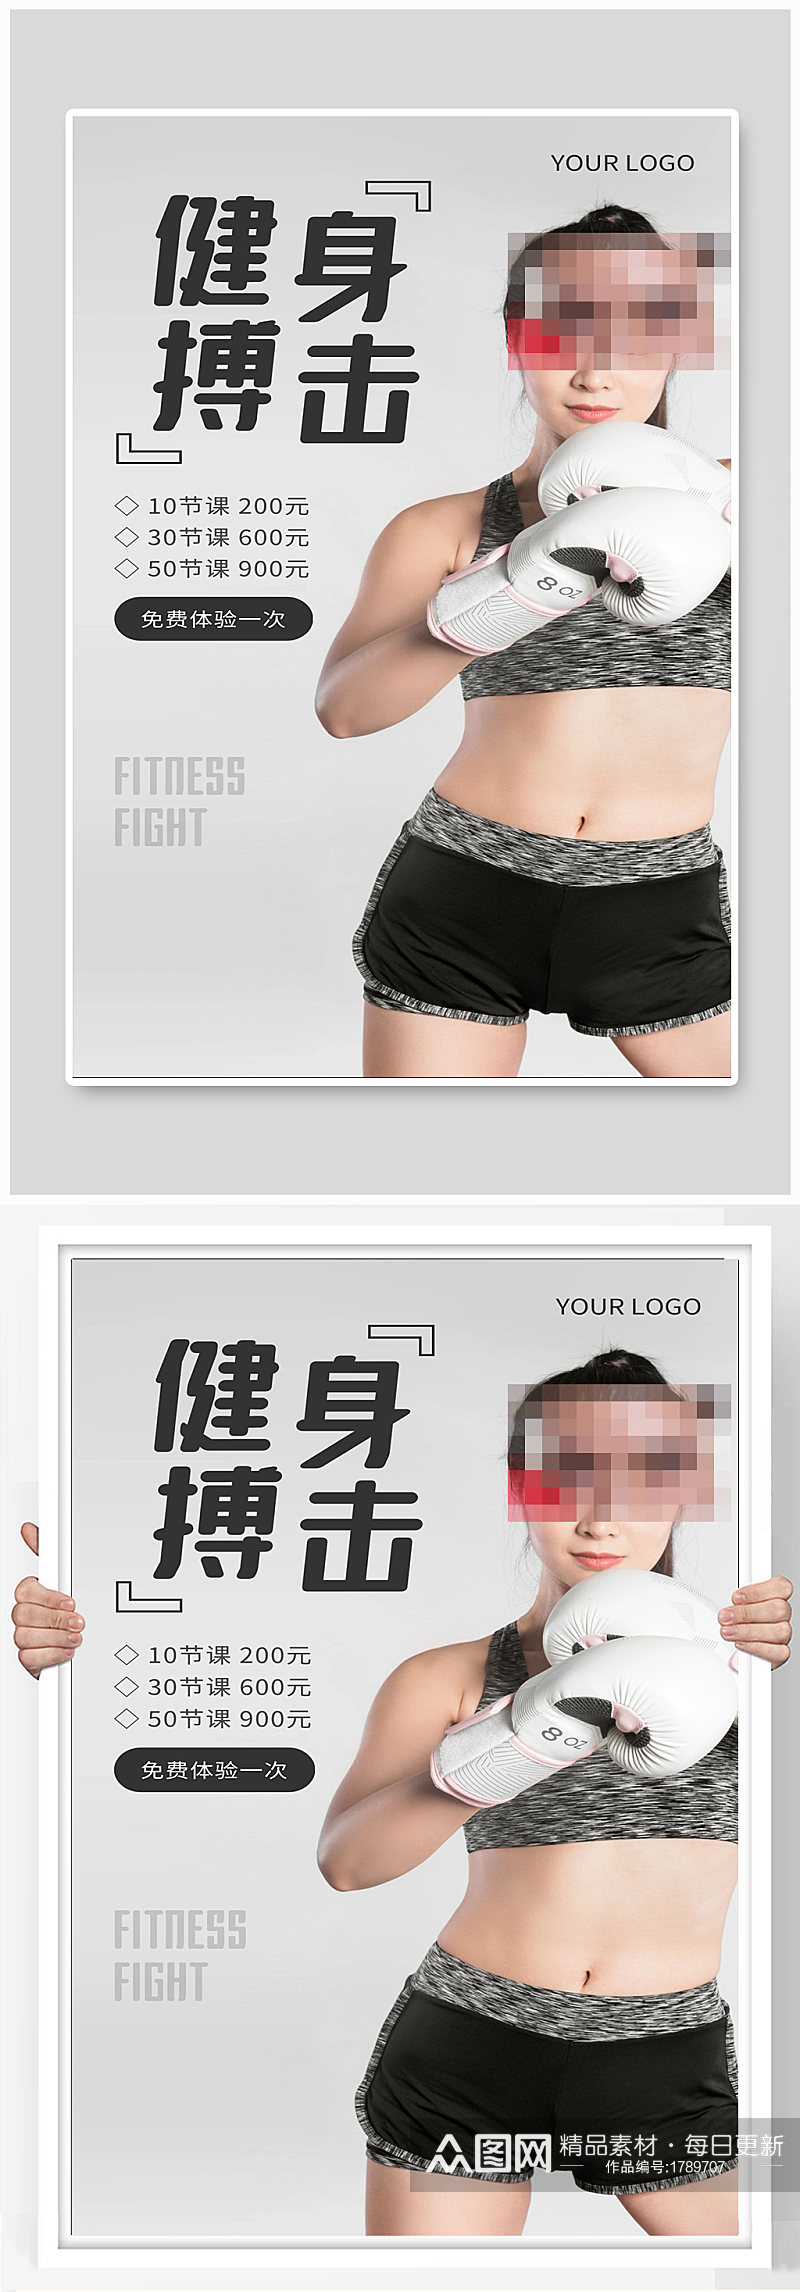 健身搏击宣传海报设计素材